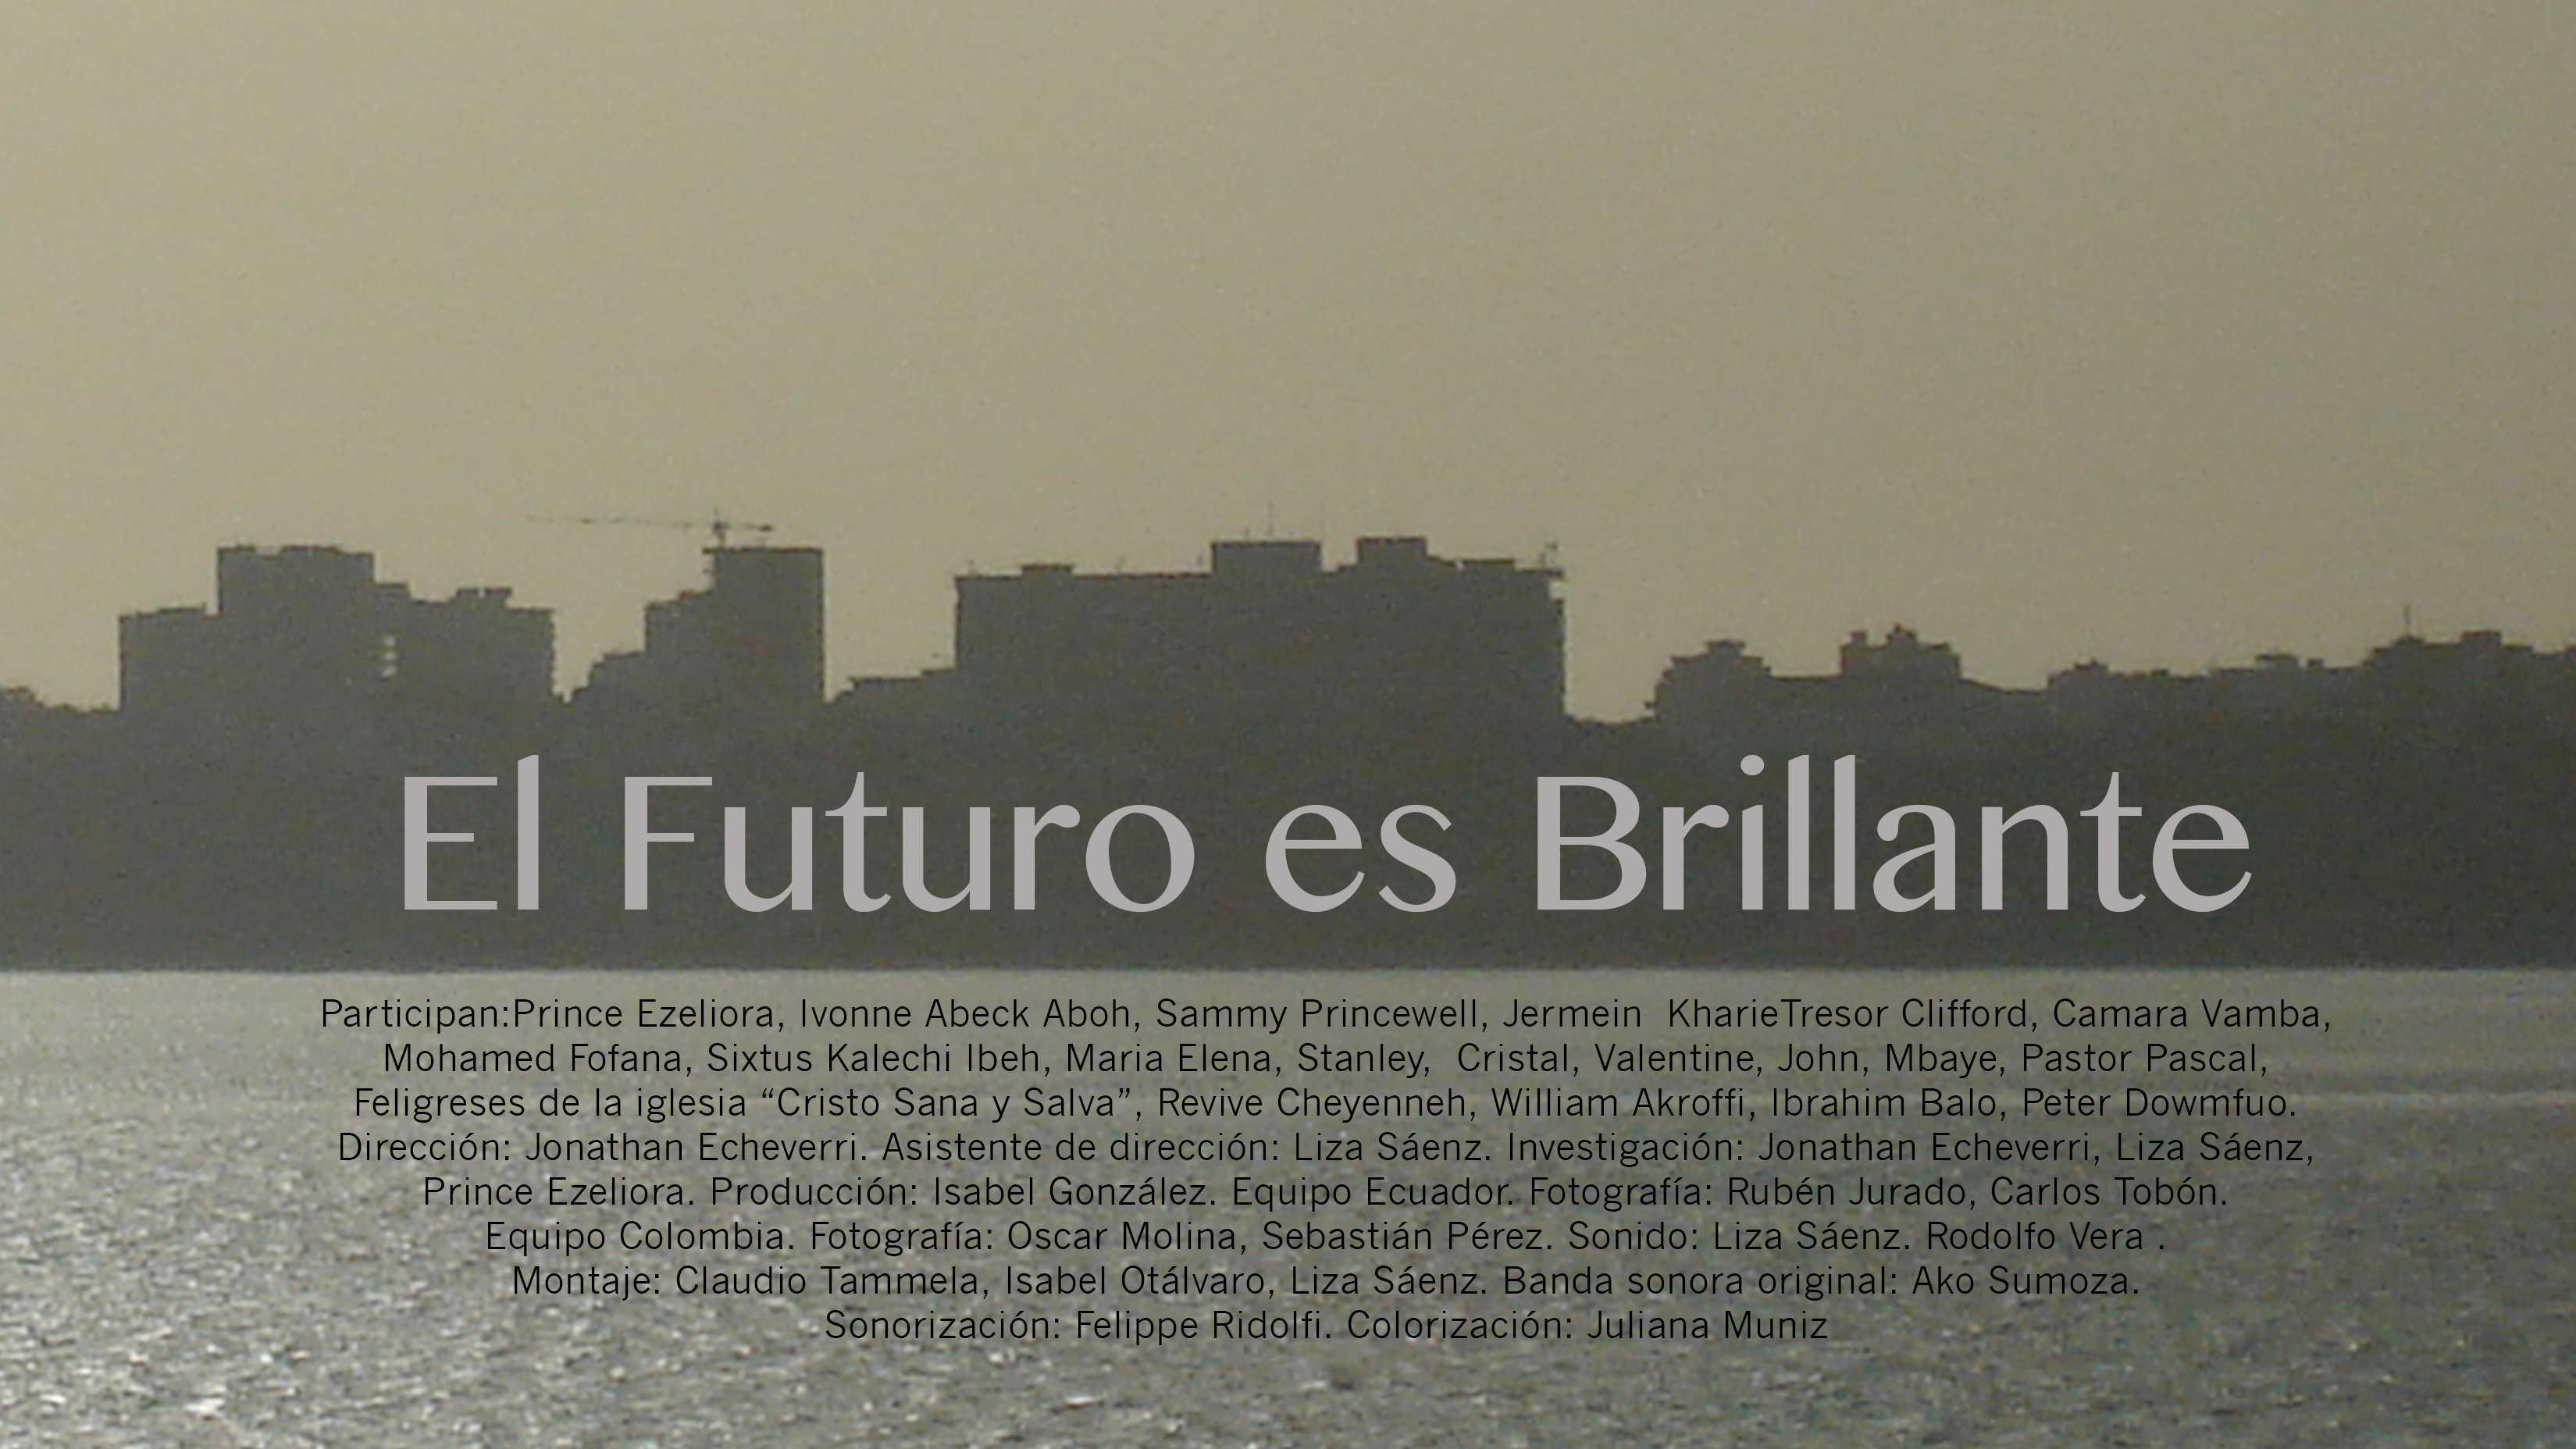 perfis de edifícios na contraluz à beira rio, com o texto "el futuro es brillante"